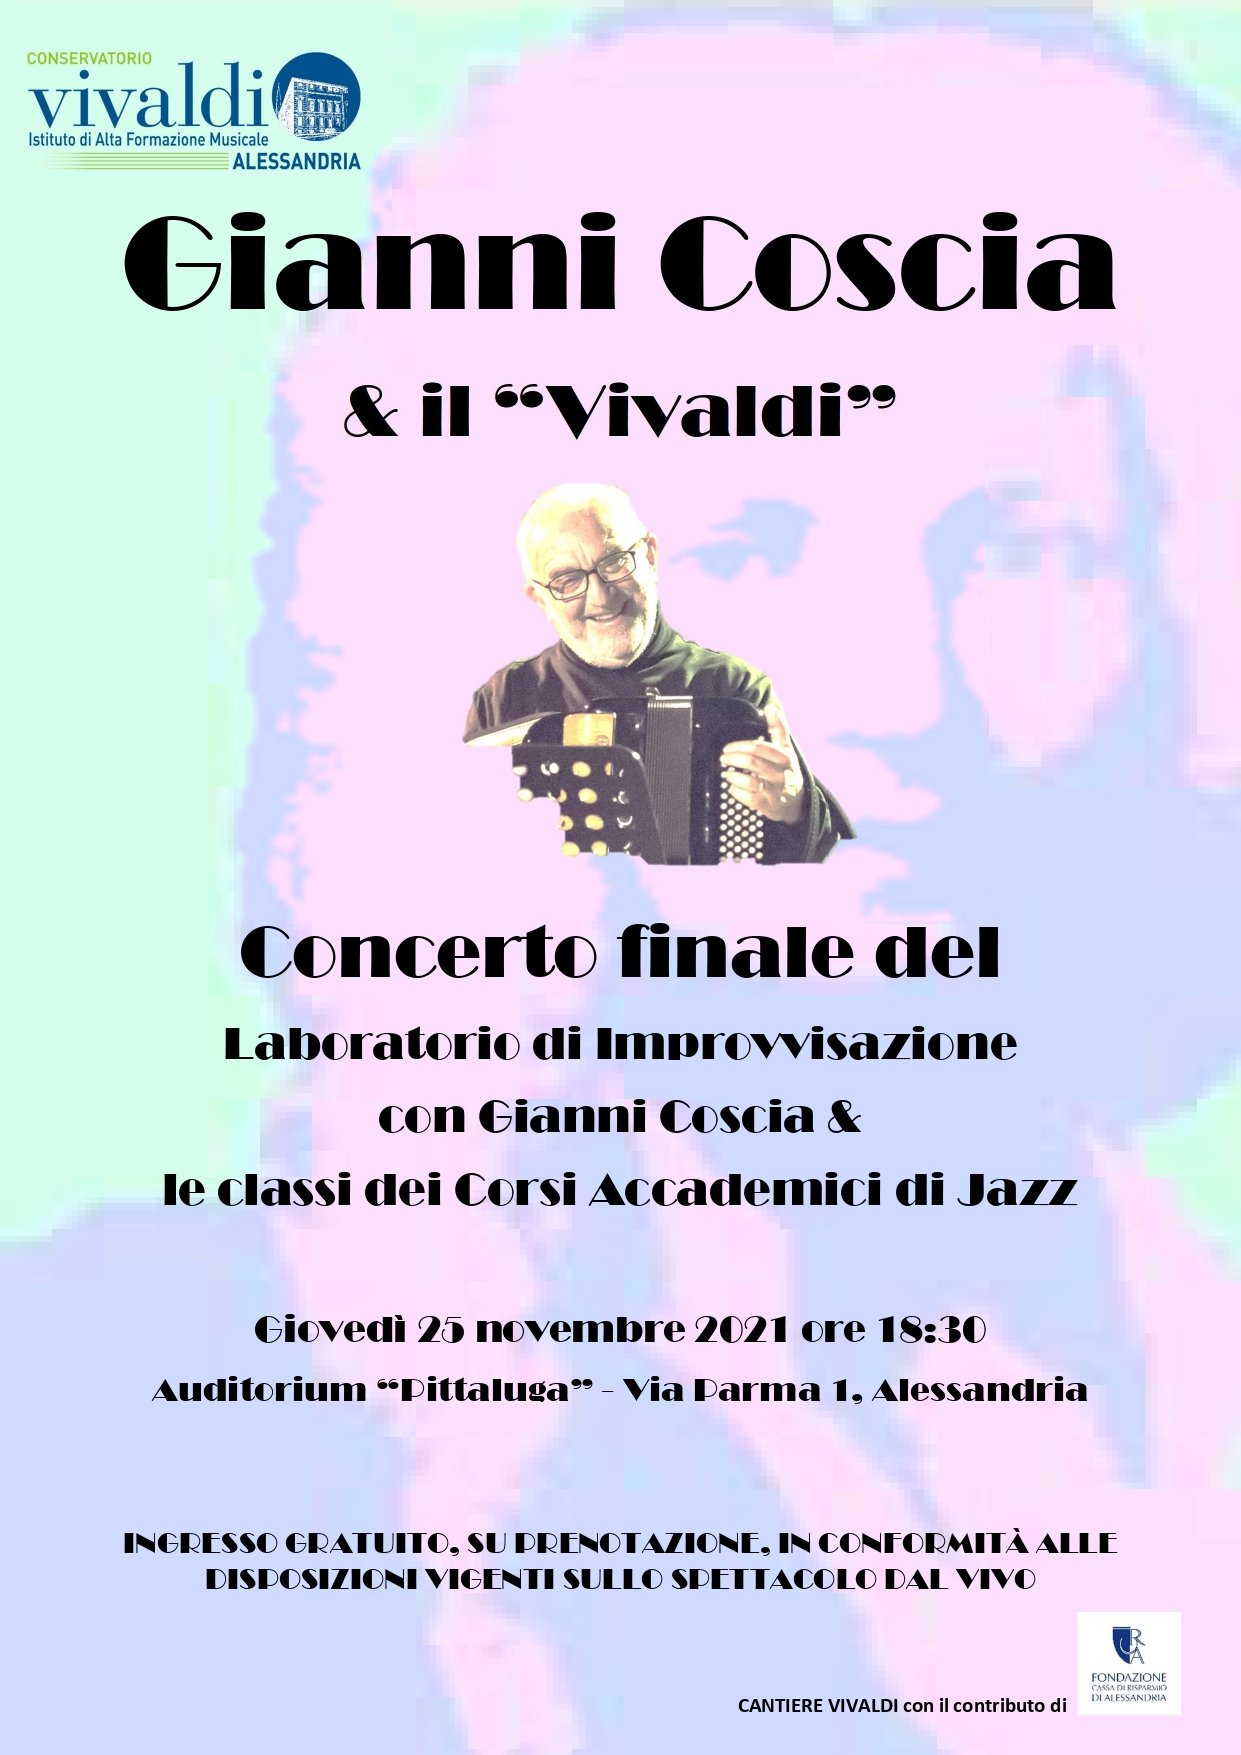 Il 25 novembre Gianni Coscia & il “Vivaldi” in concerto all’Auditorium Pittaluga